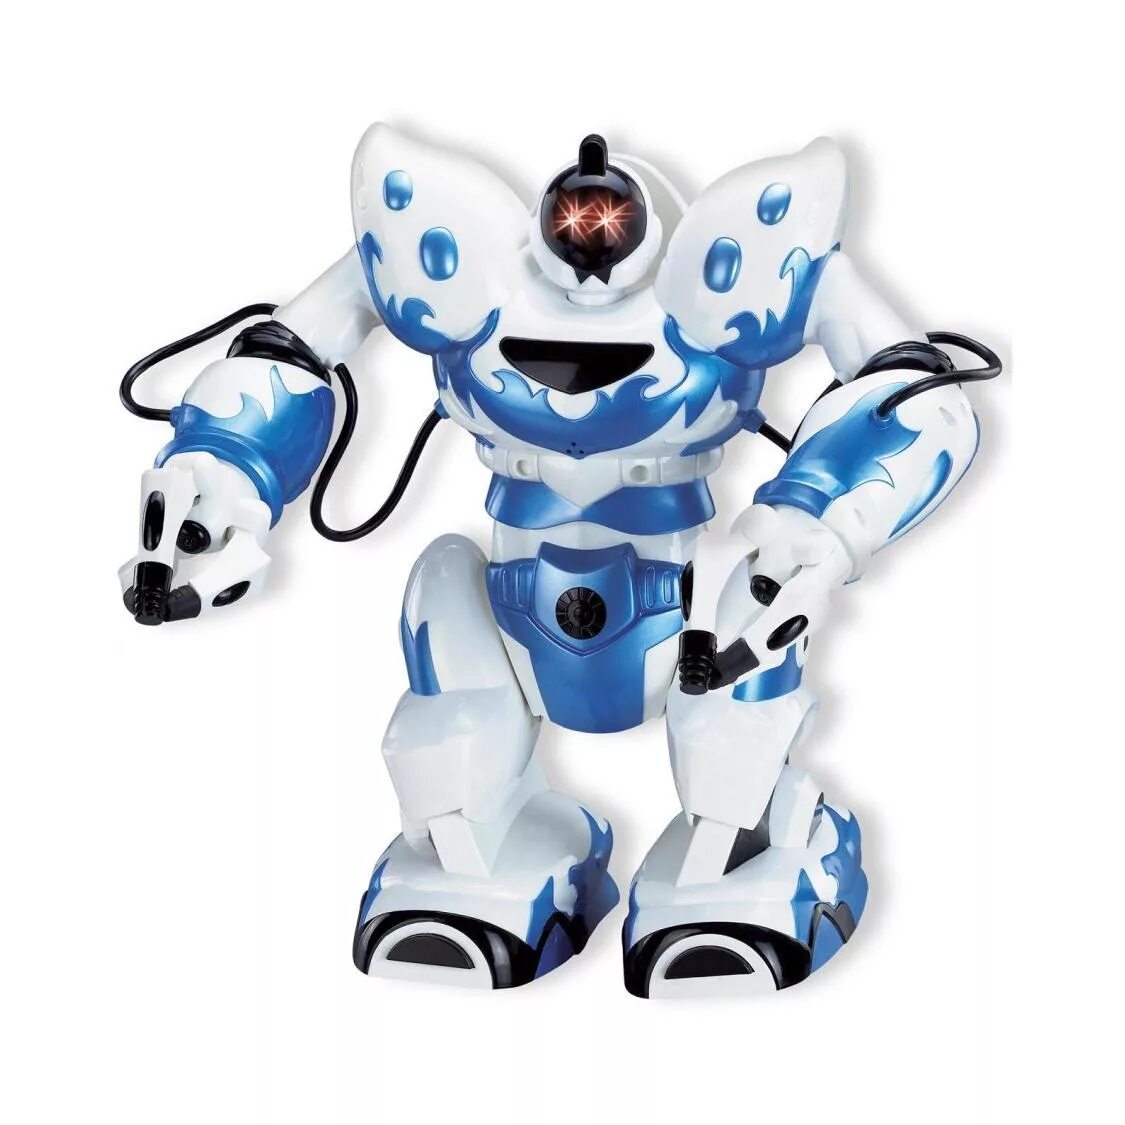 Игрушка робот. Робот игрушечный. Роботы роботы игрушки. Маленькие роботы игрушки. Включи игрушки роботы новые